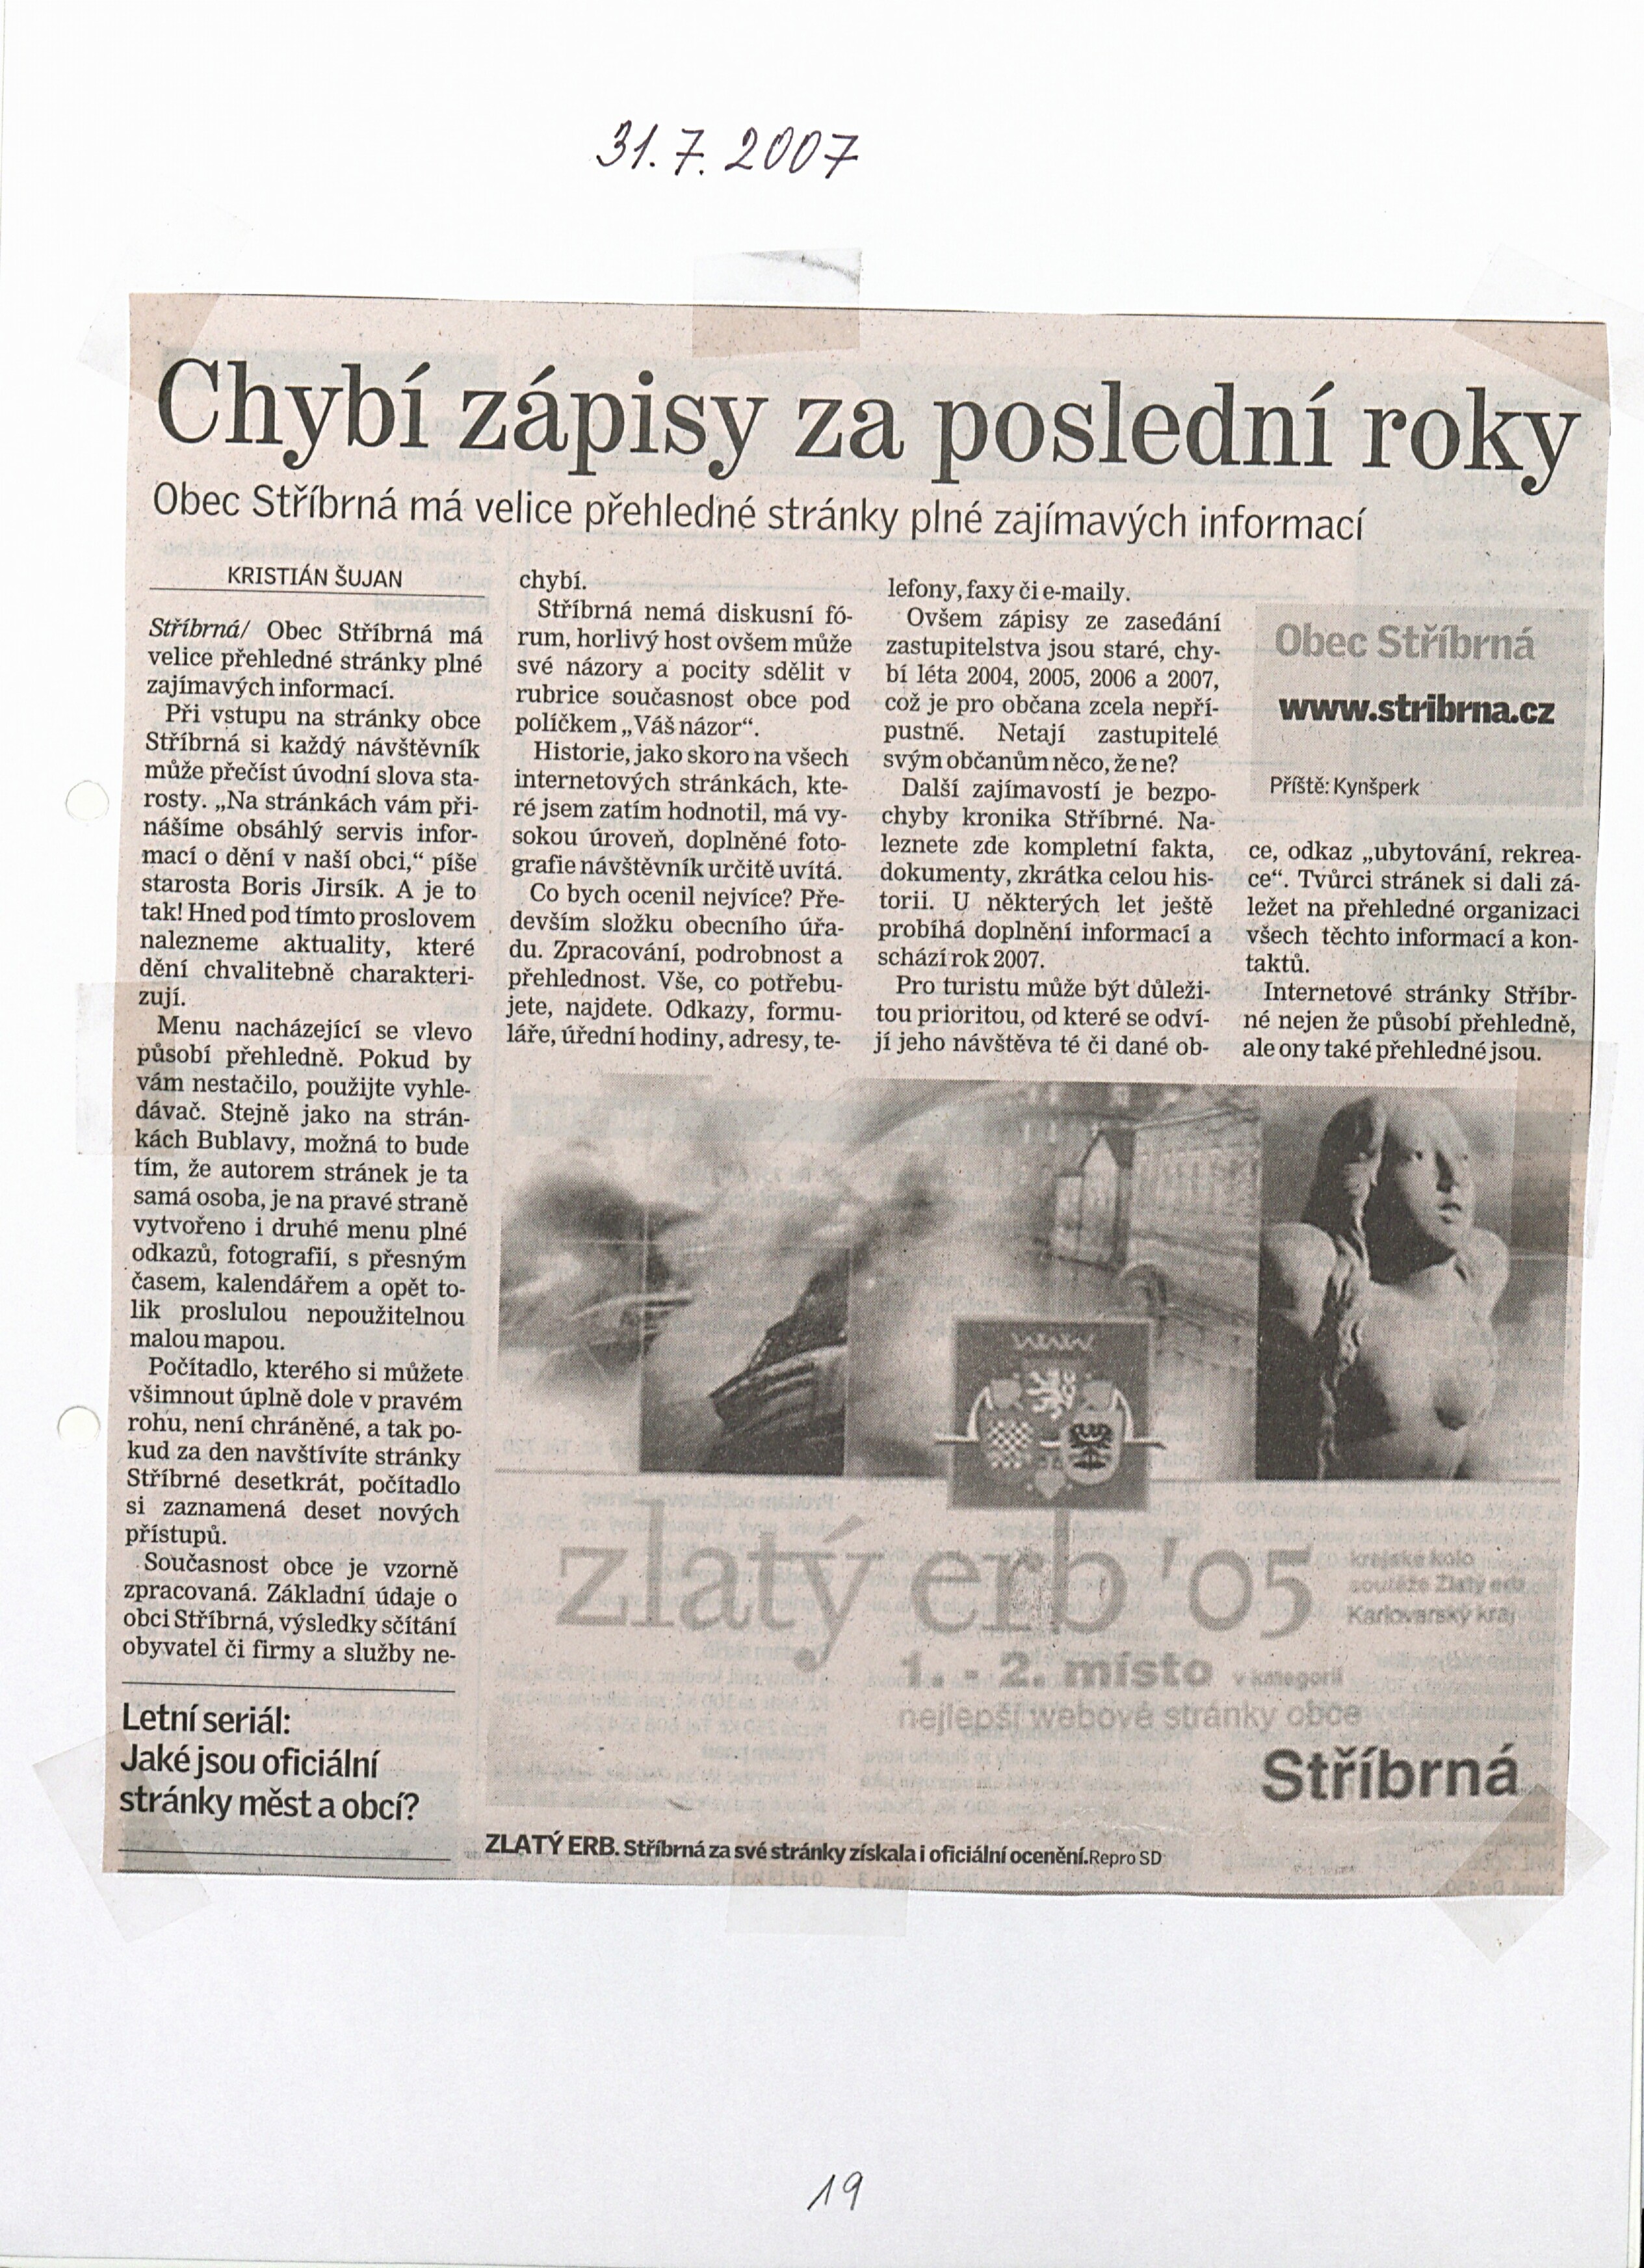 20. soap-so_01331_obec-stribrna-priloha-2007-2008_0200